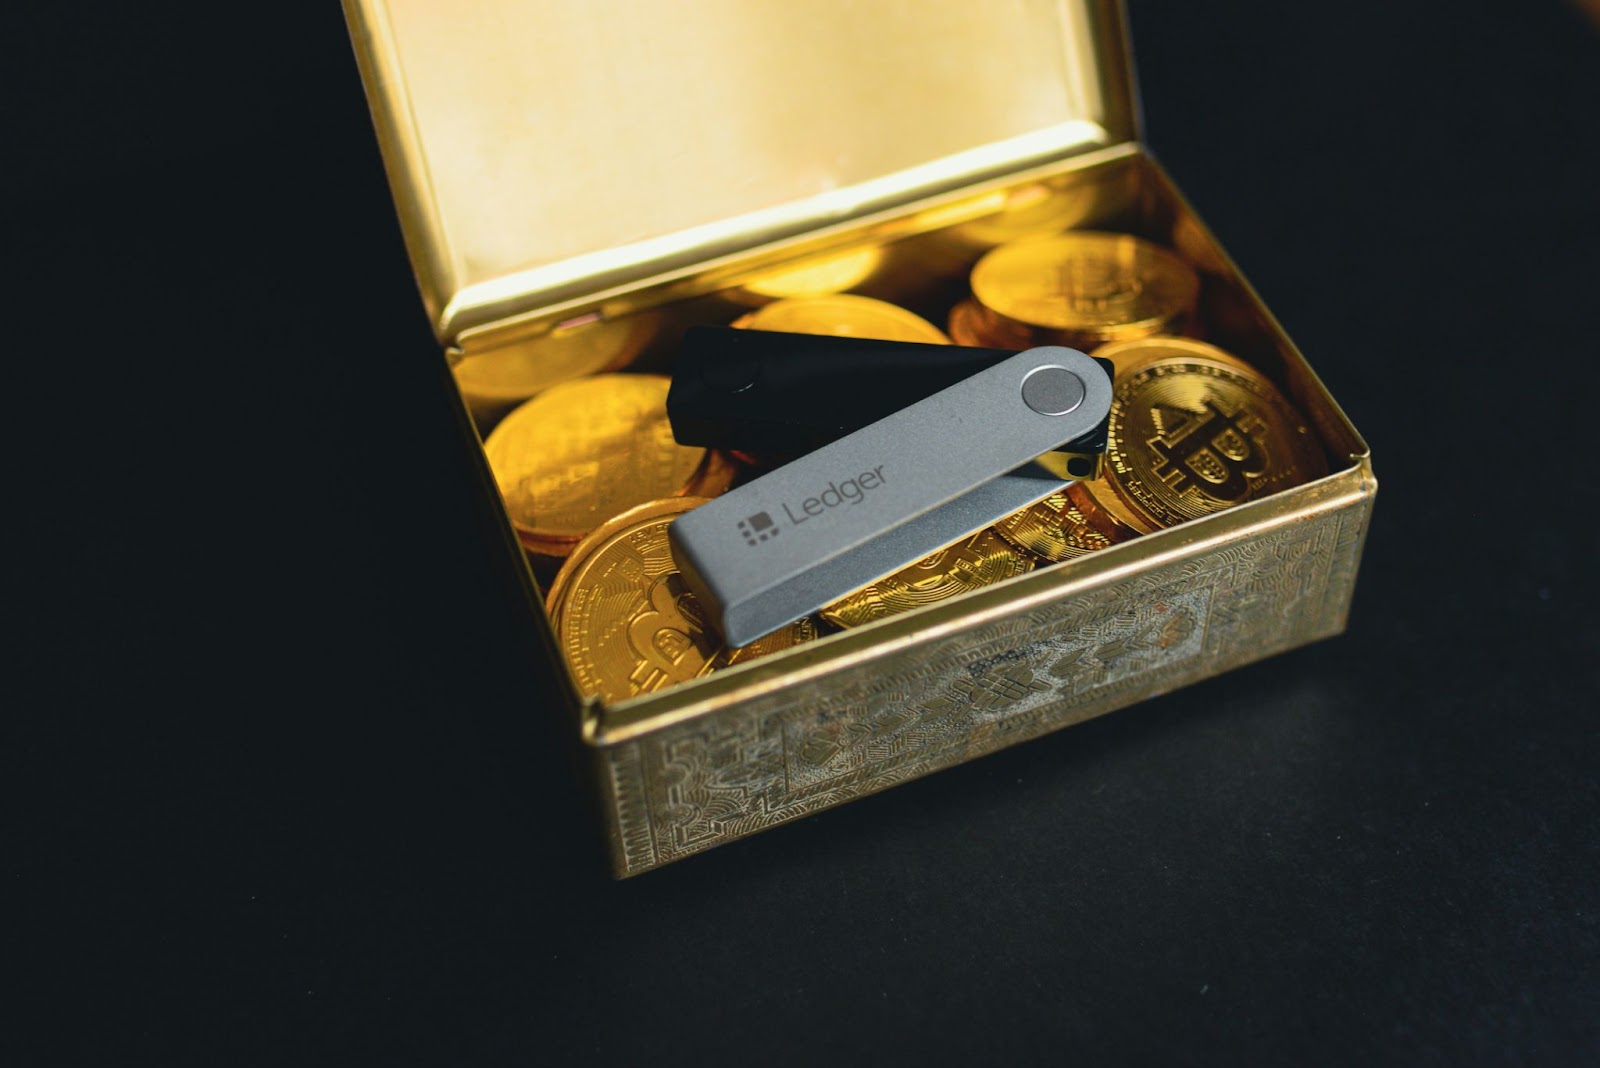 A metal box containing bitcoin coins